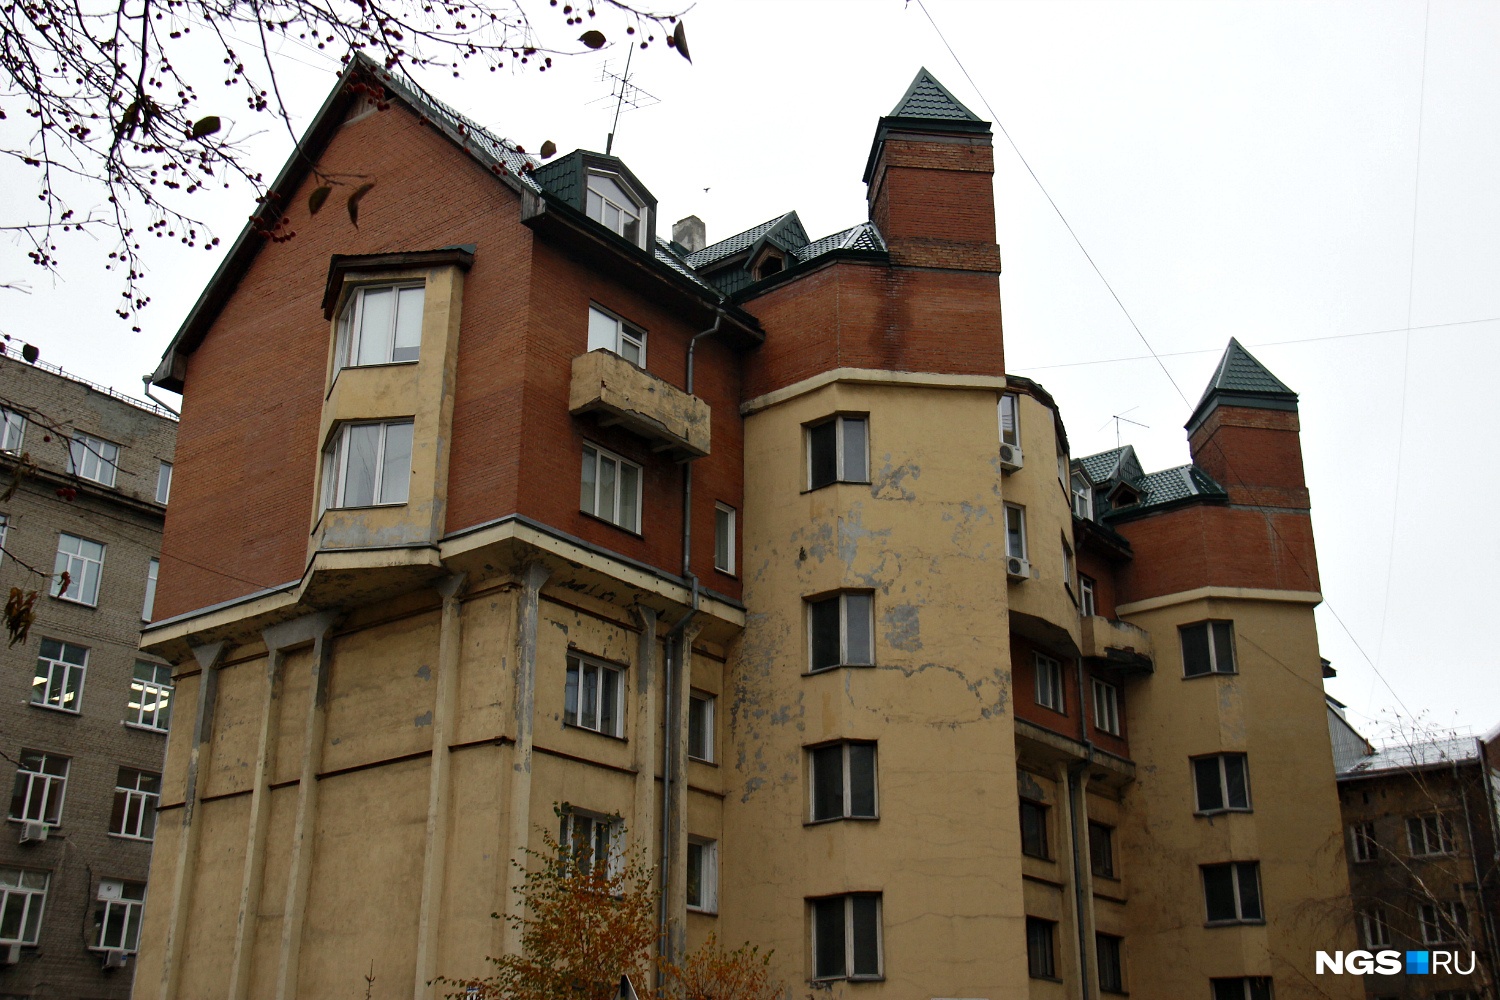 Усиленное и надстроенное жилое здание на улице Октябрьской